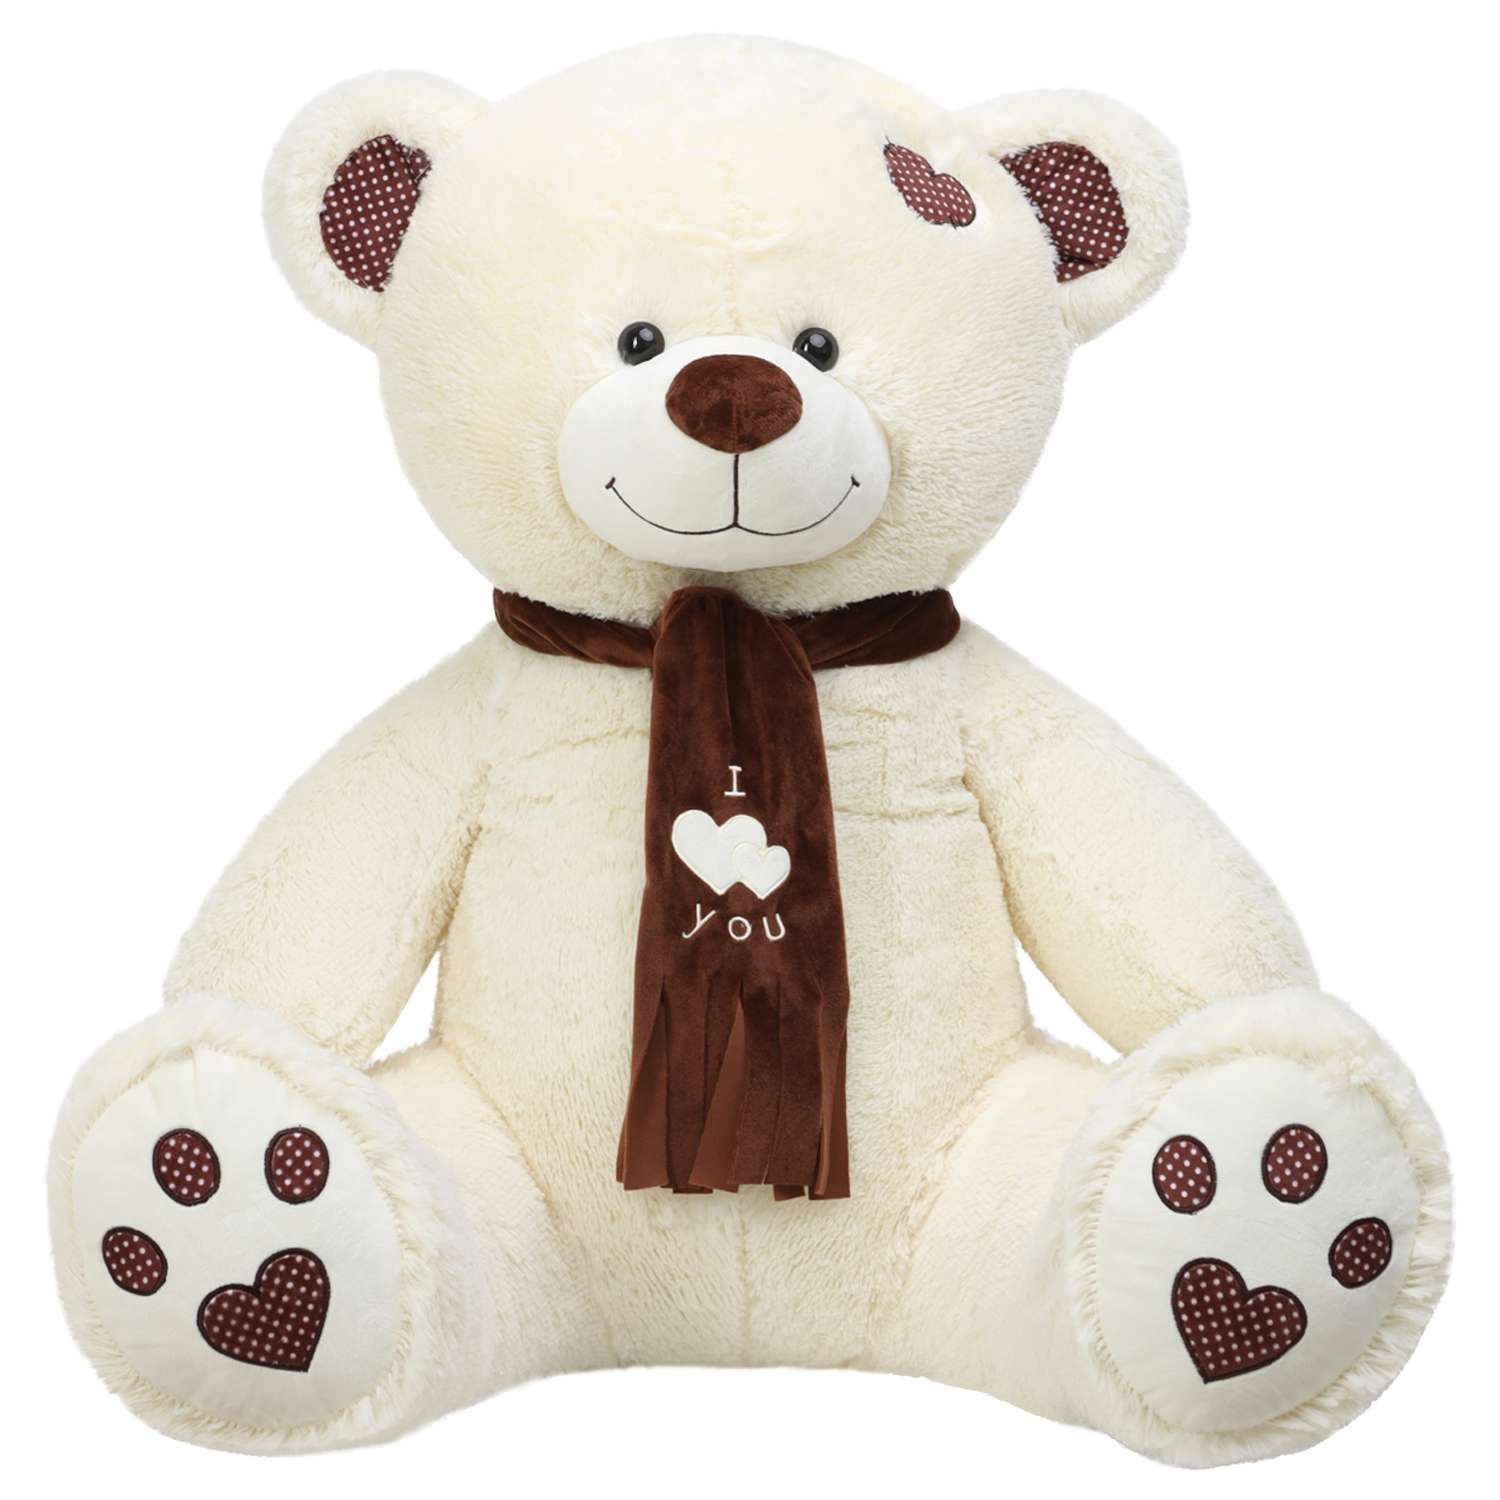 Почему в качестве подарка стоит выбрать именно мягкую игрушку медведь?